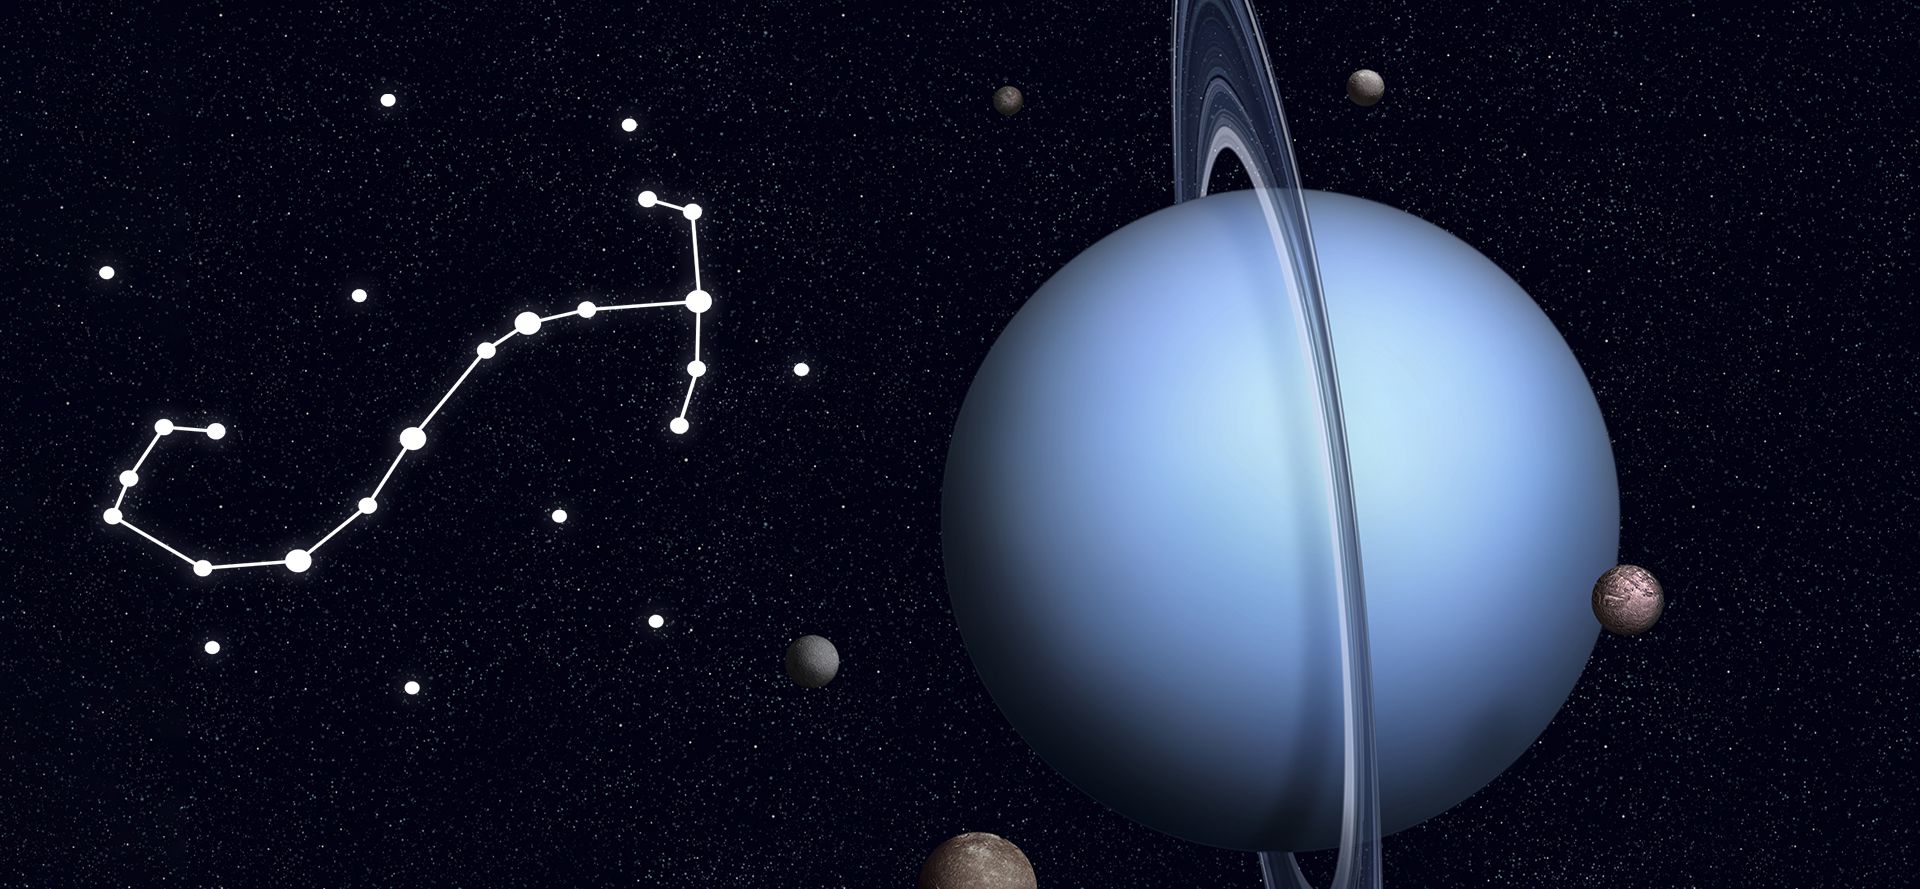 Uranus and Scorpio constellation.